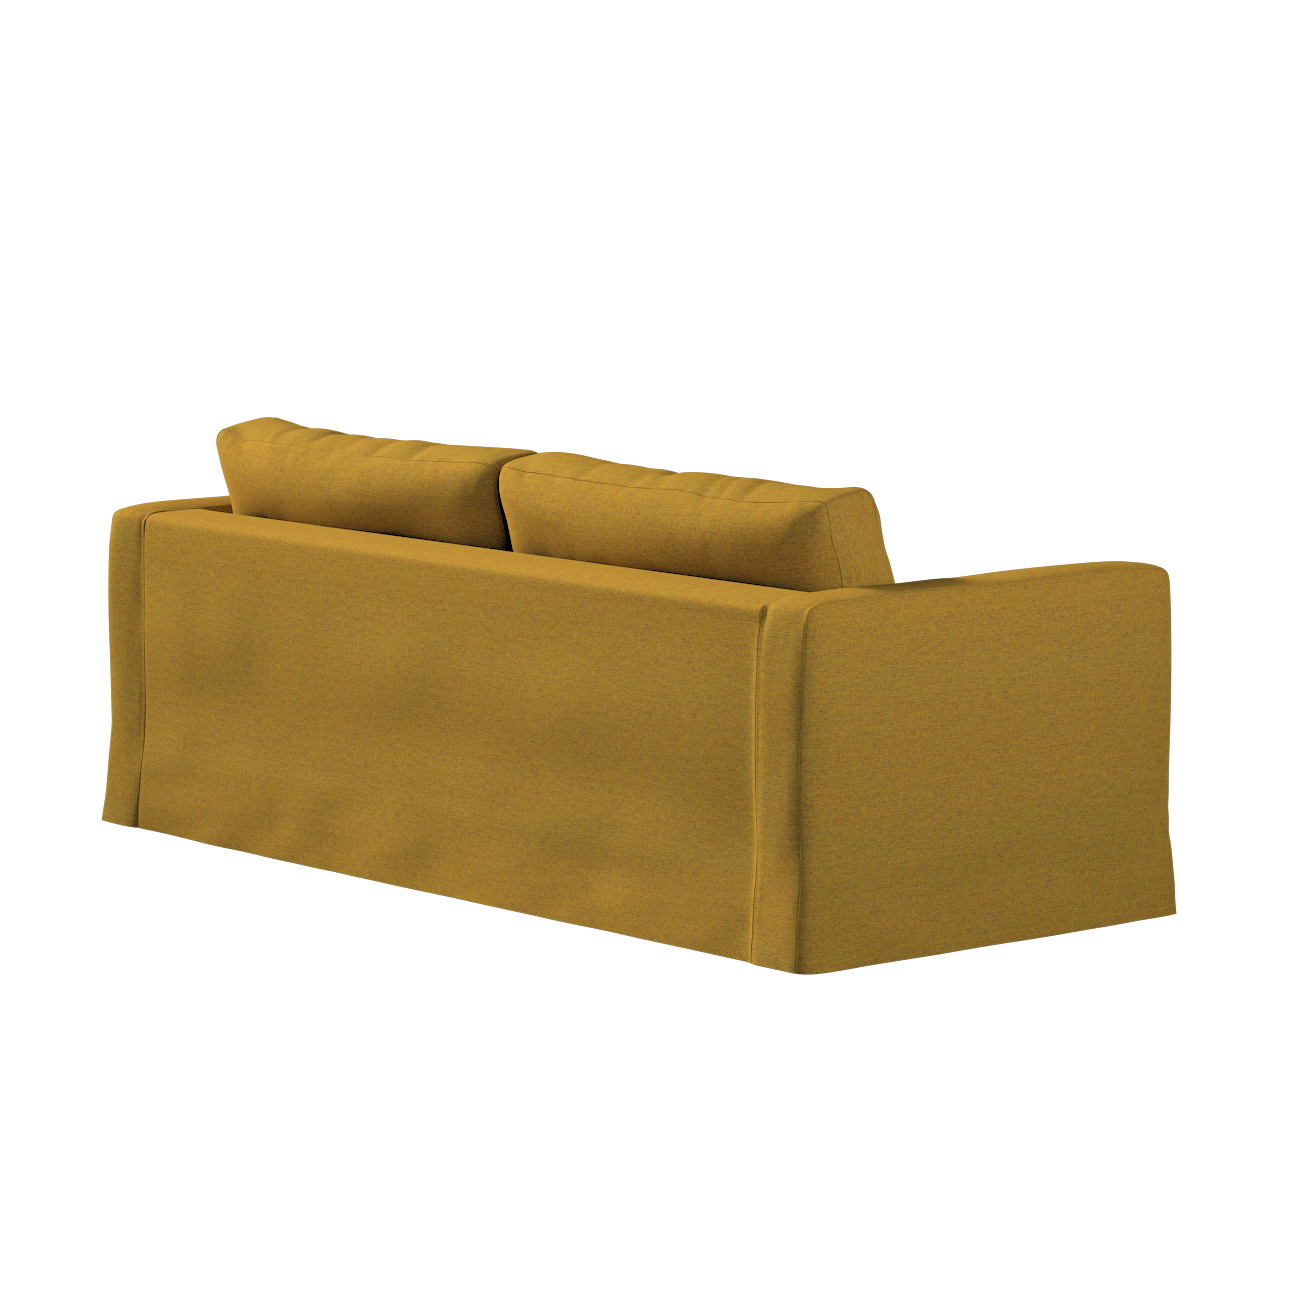 Bezug für Karlstad 3-Sitzer Sofa nicht ausklappbar, lang, gelb, Bezug für S günstig online kaufen